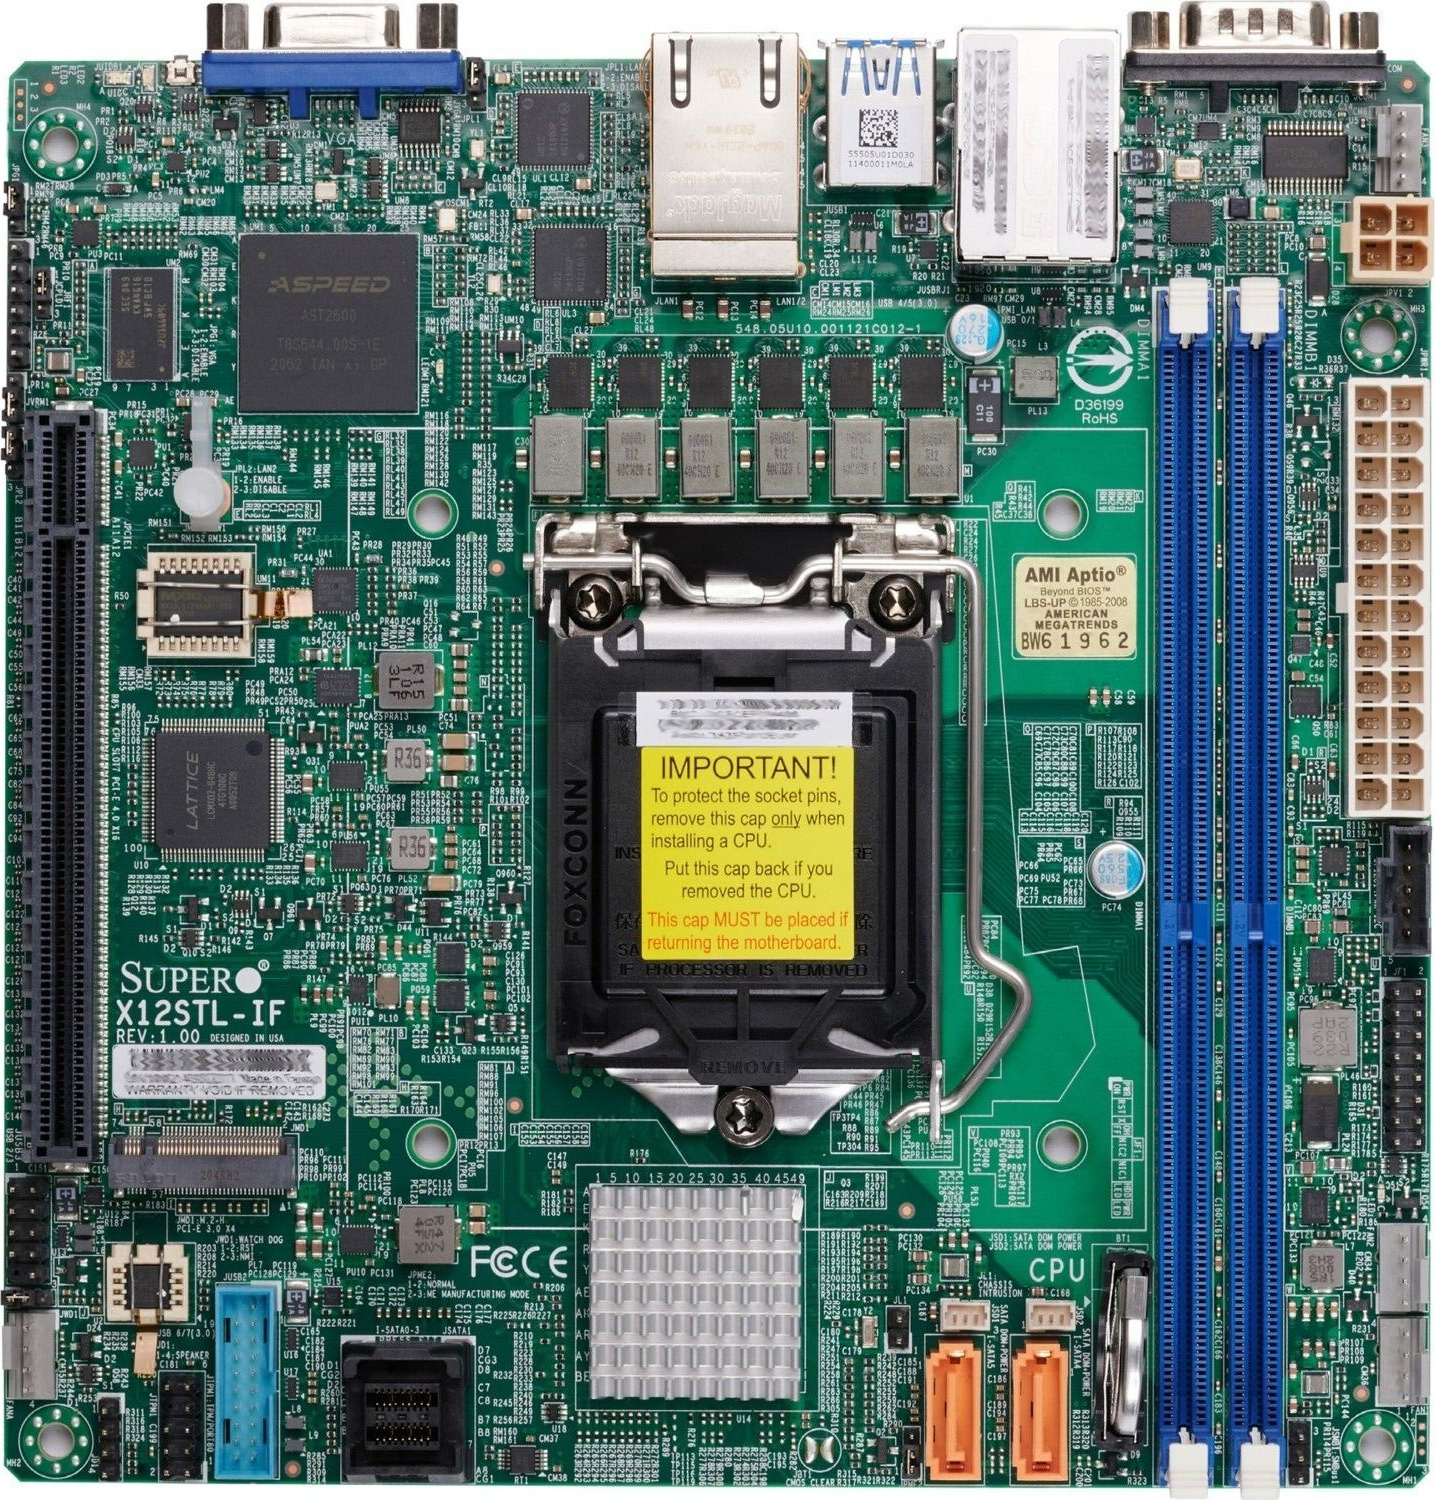 SUPERMICRO Mini ATX Server / Workstation Motherboard LGA-1200 C252 MBD-X12STL-IF